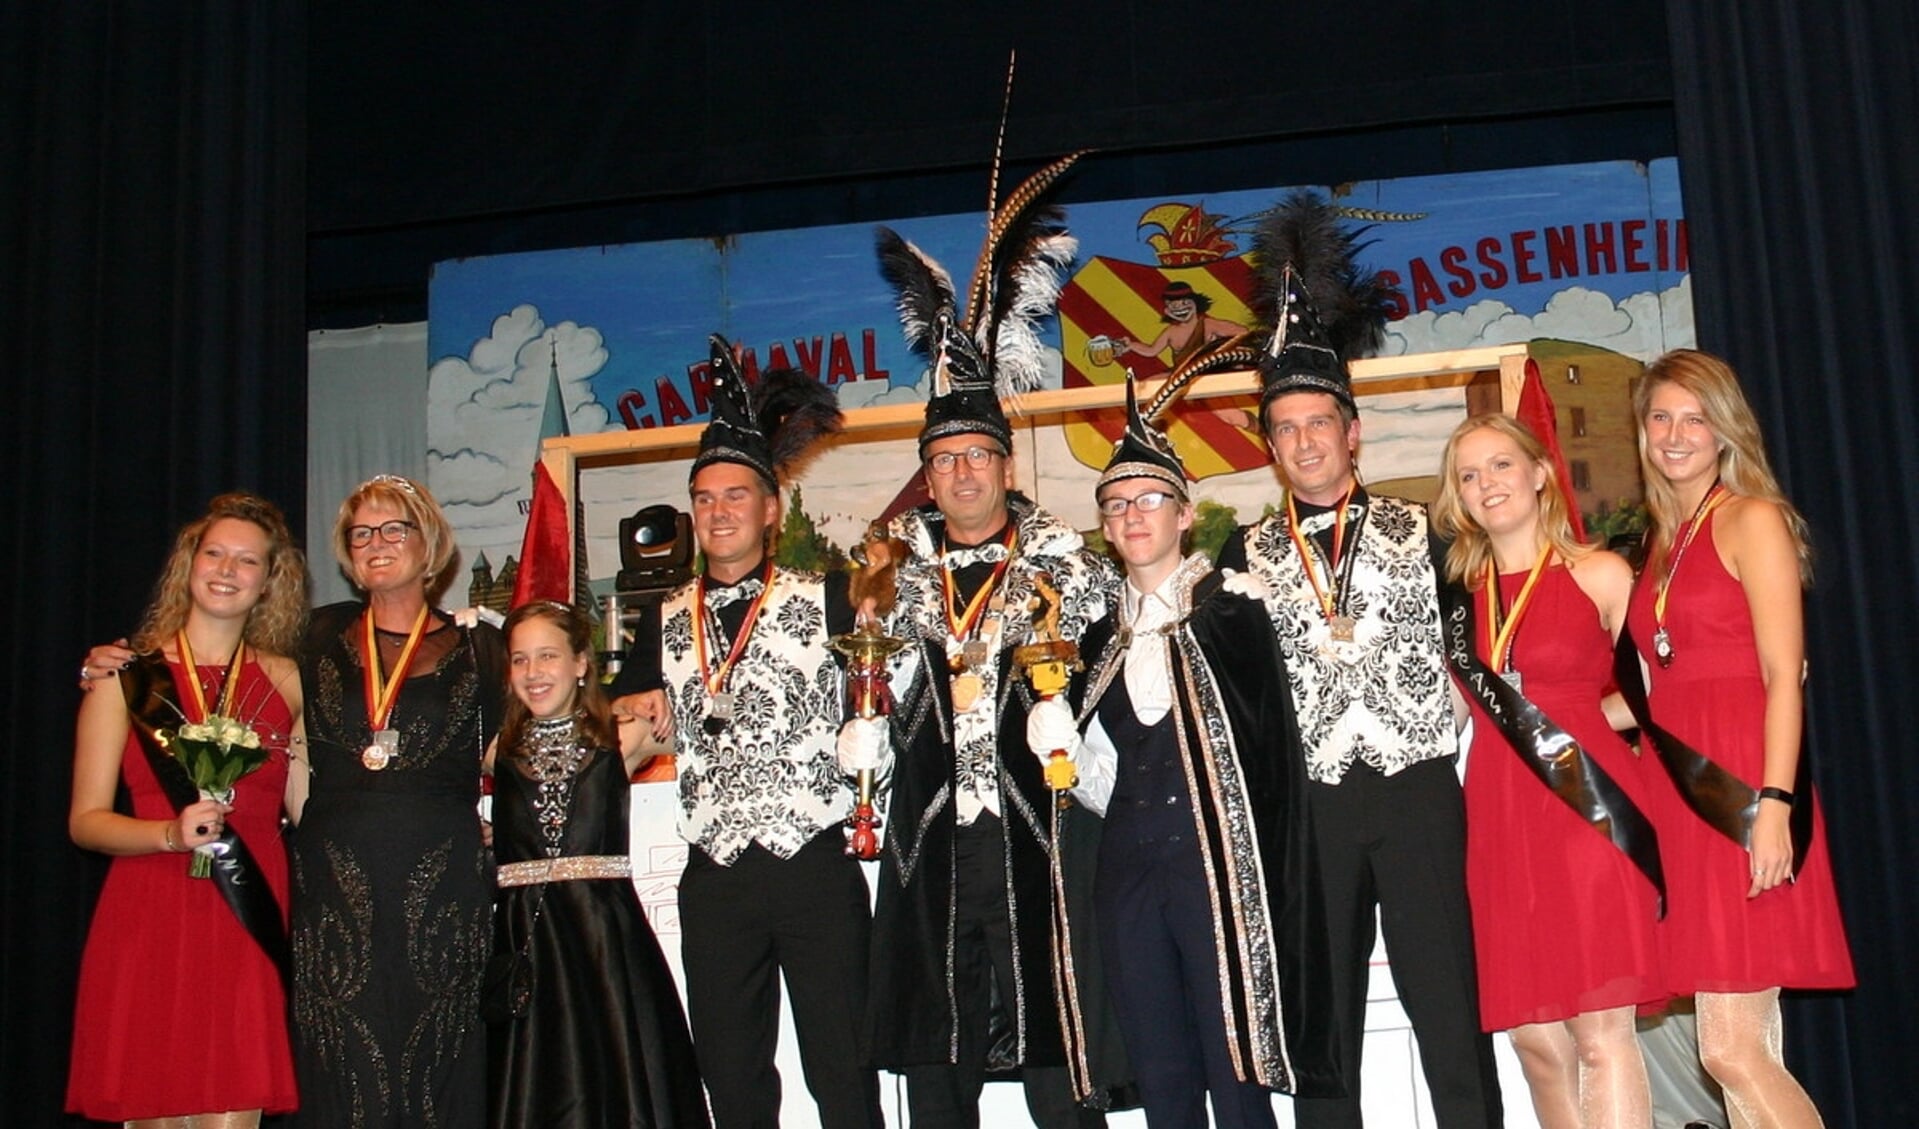 De prinsenparen van de Saksen zijn klaar voor het jubileum. | Foto: pr.